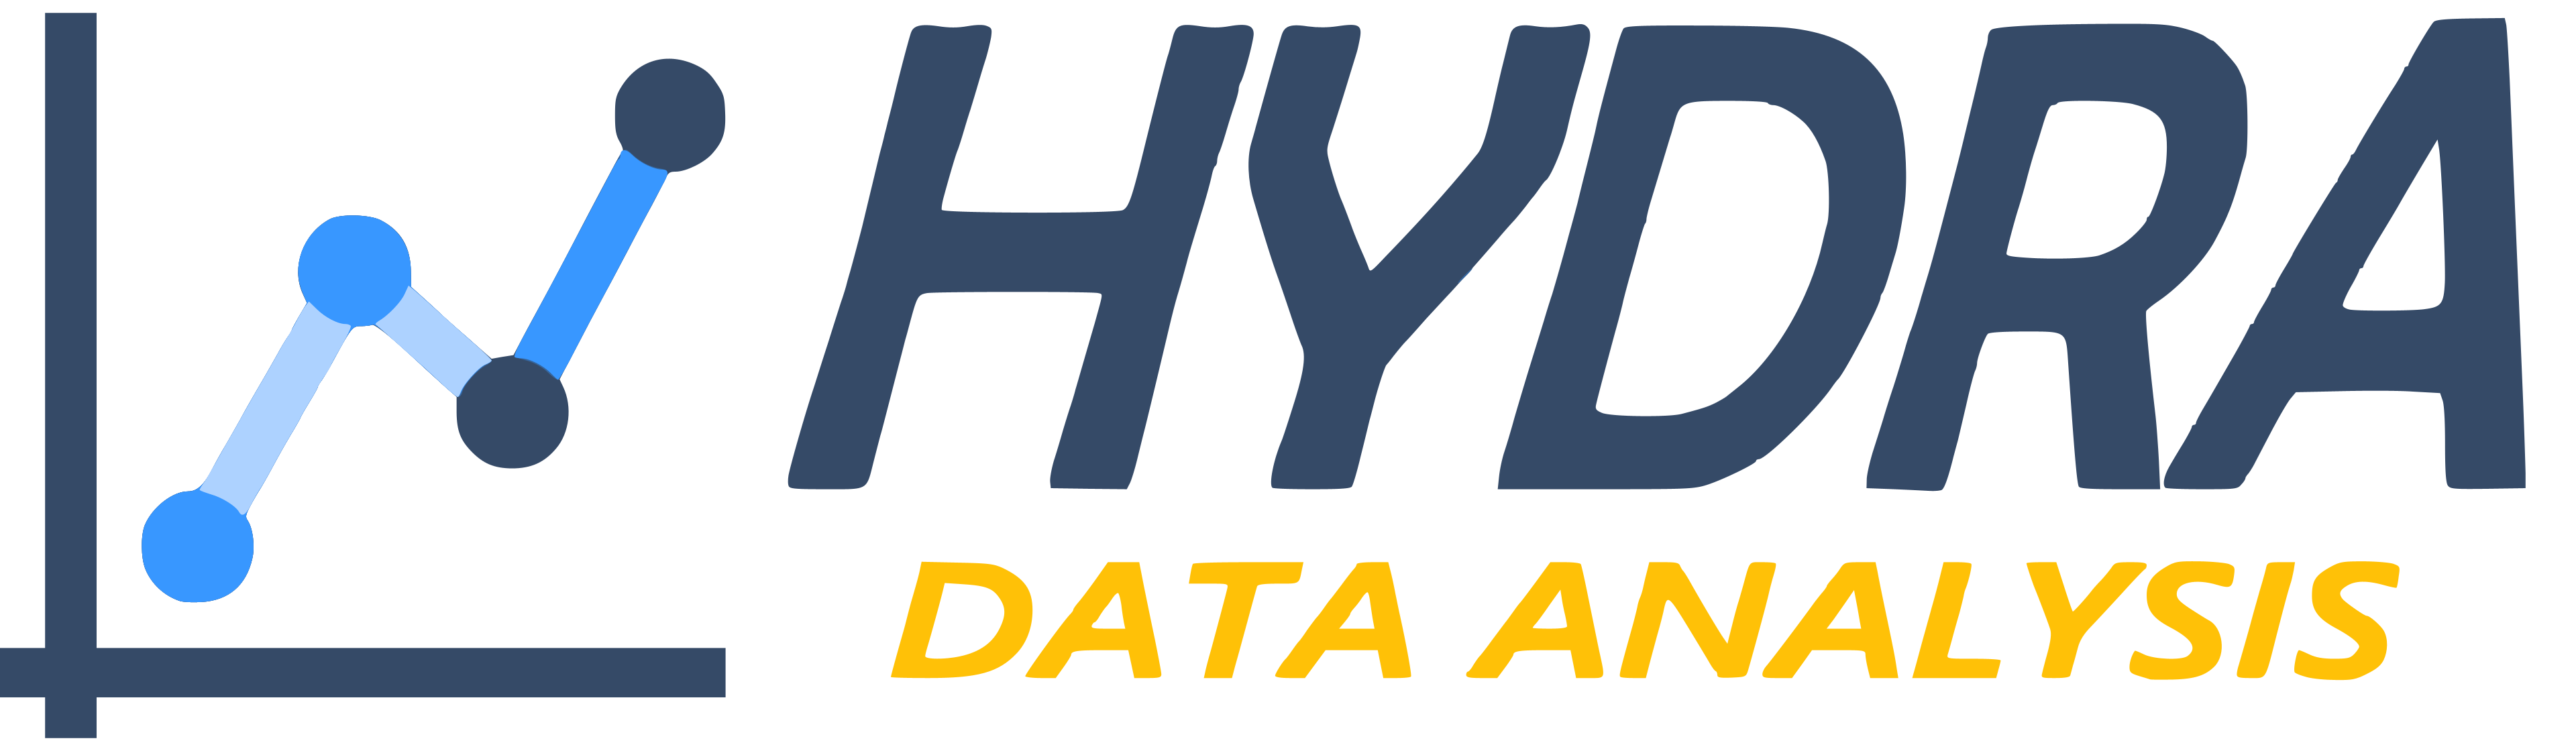 Hydra Data Analysis Logo